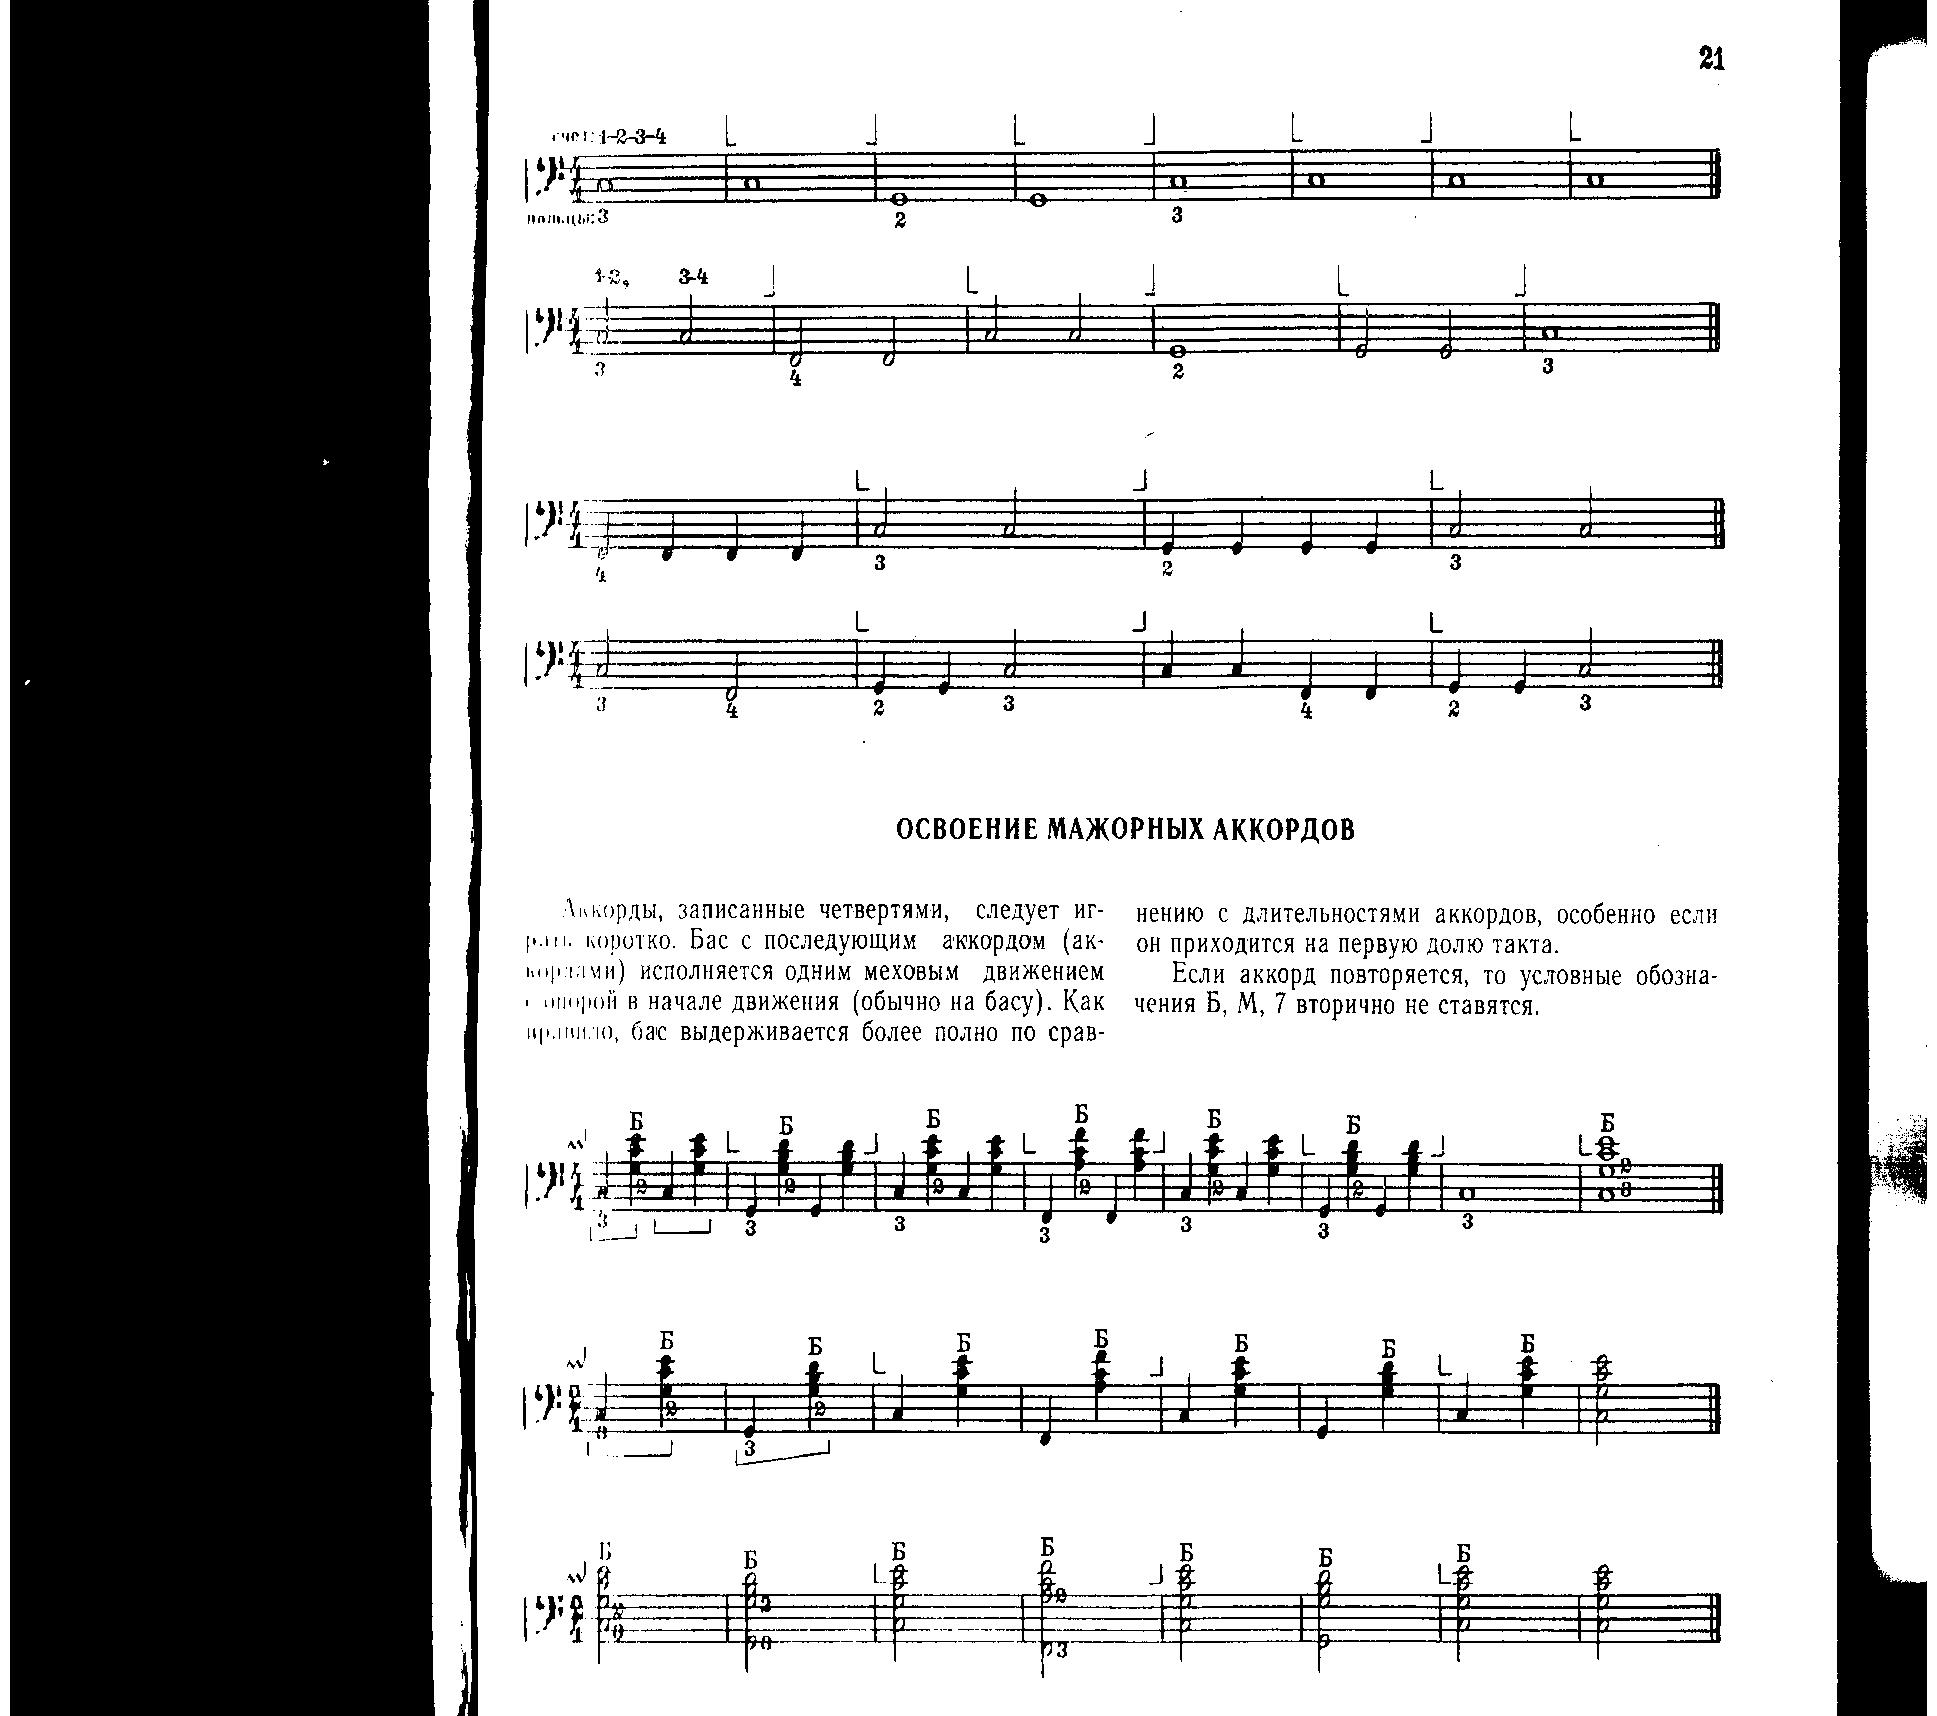 Формирование основных приёмов при движении по клавиатурам(Руки аккордеониста во время игры)